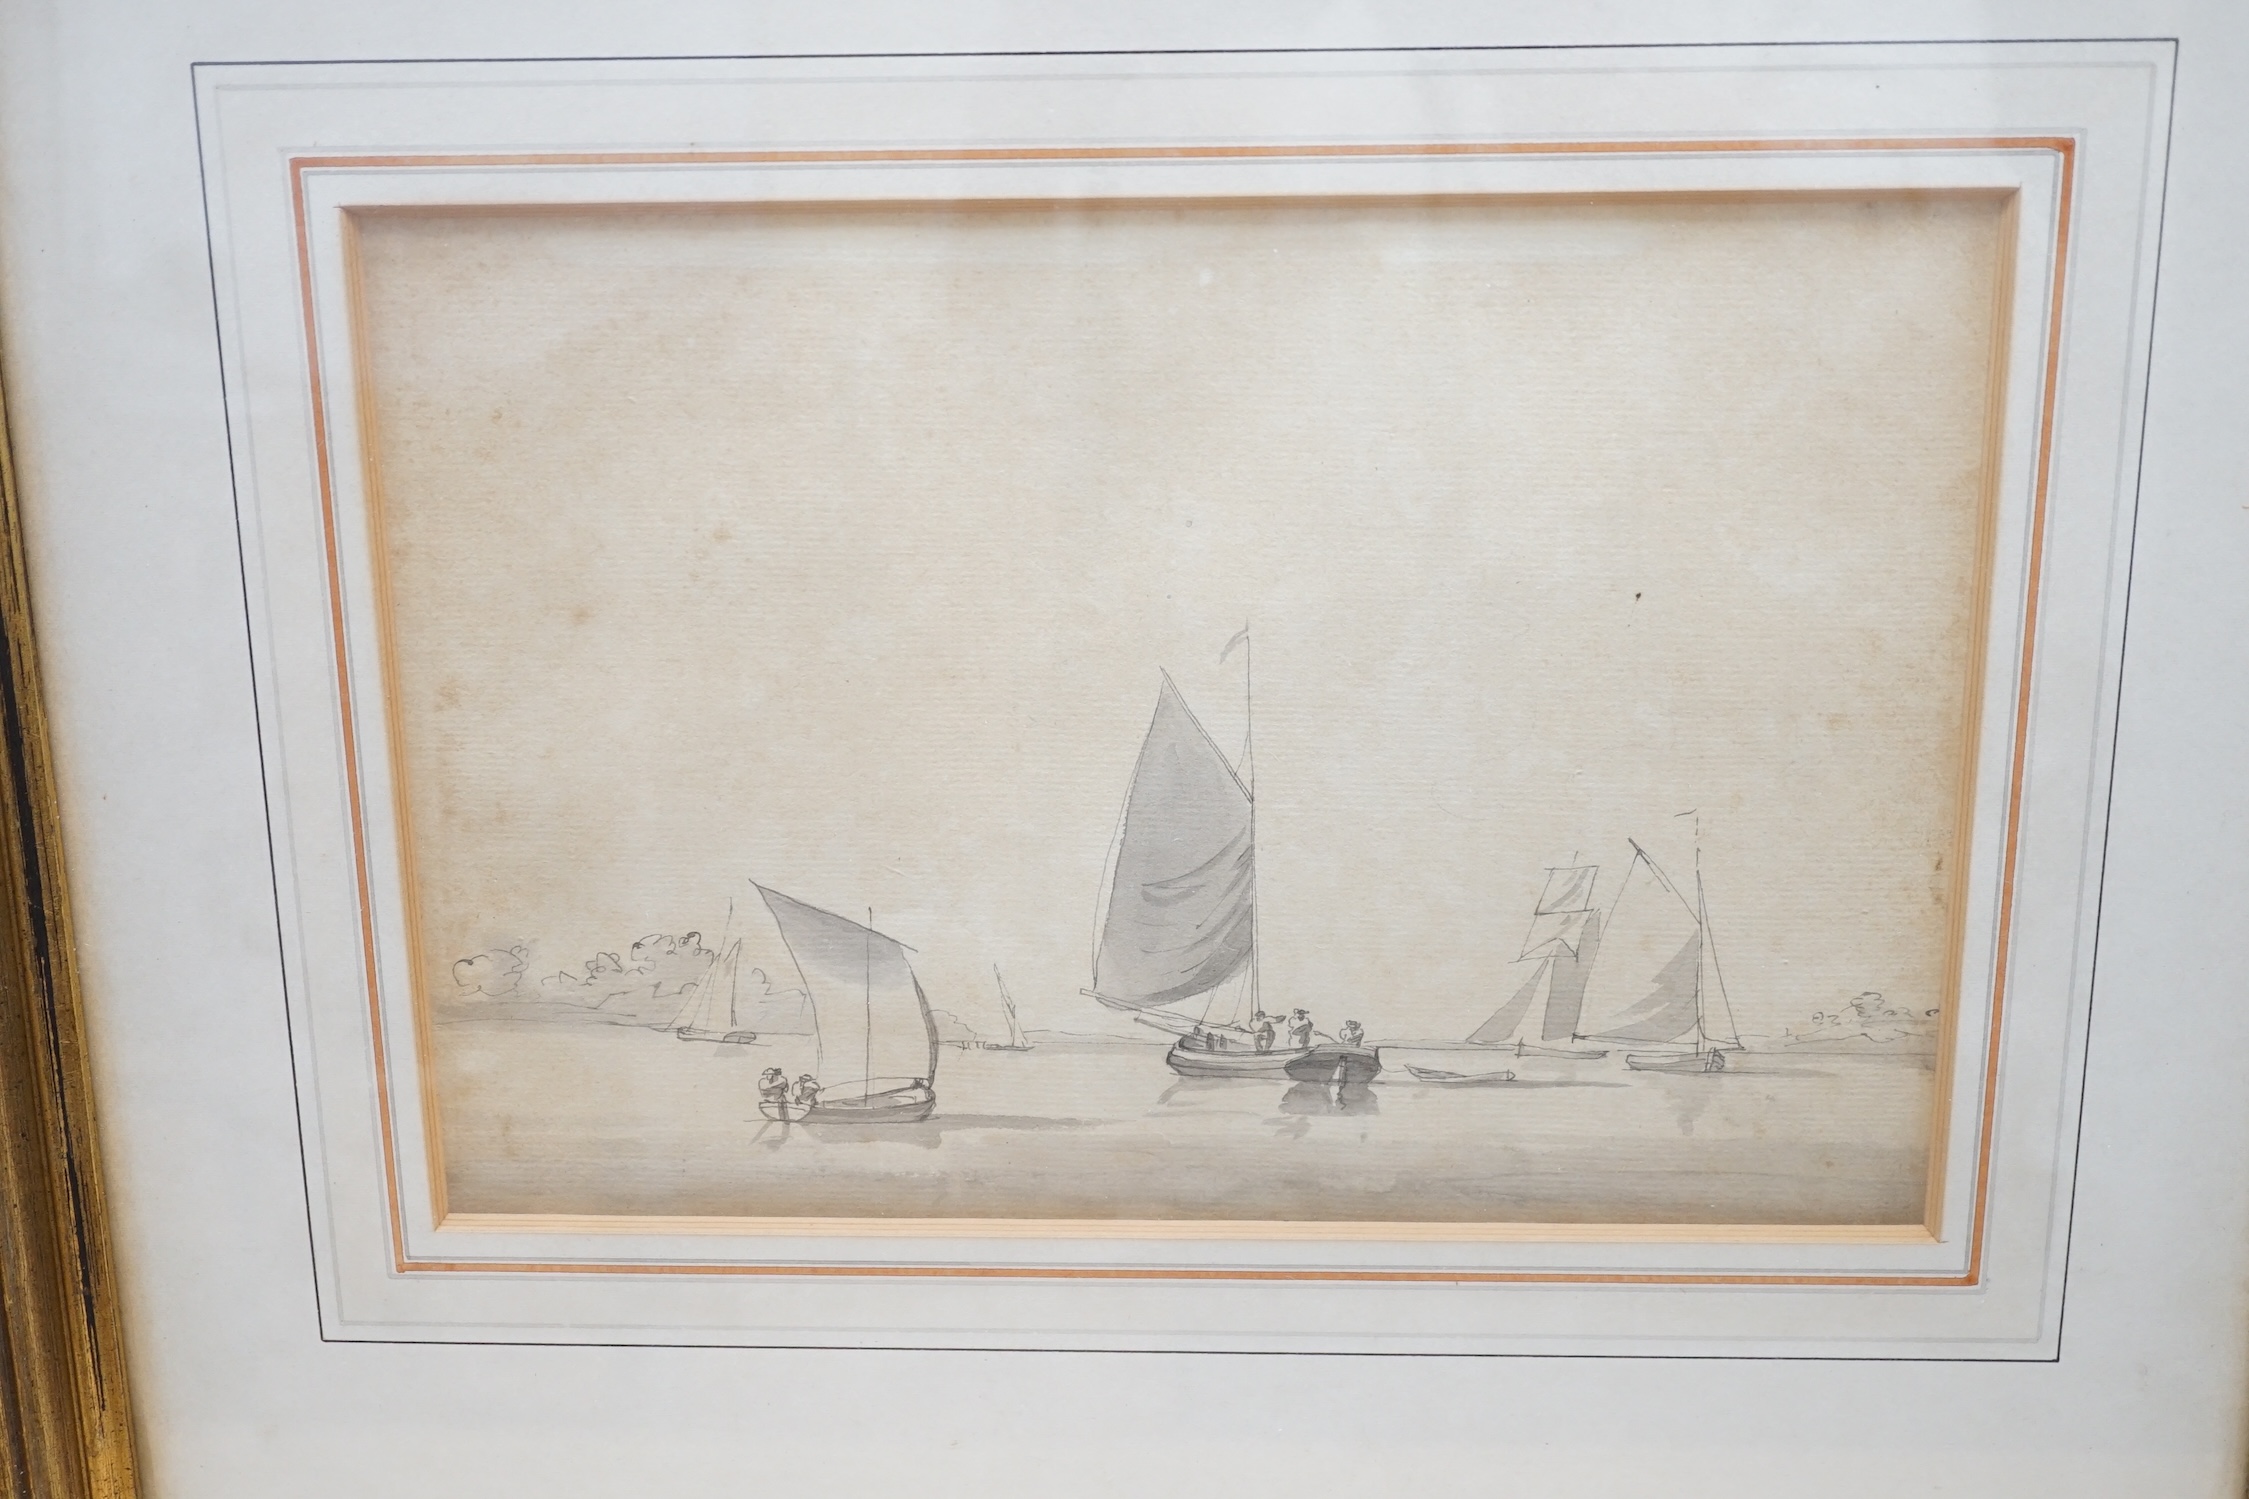 William Anderson (1757-1837), monochrome watercolour, Sailing boats, 18 x 27cm. Condition - fair, discolouration